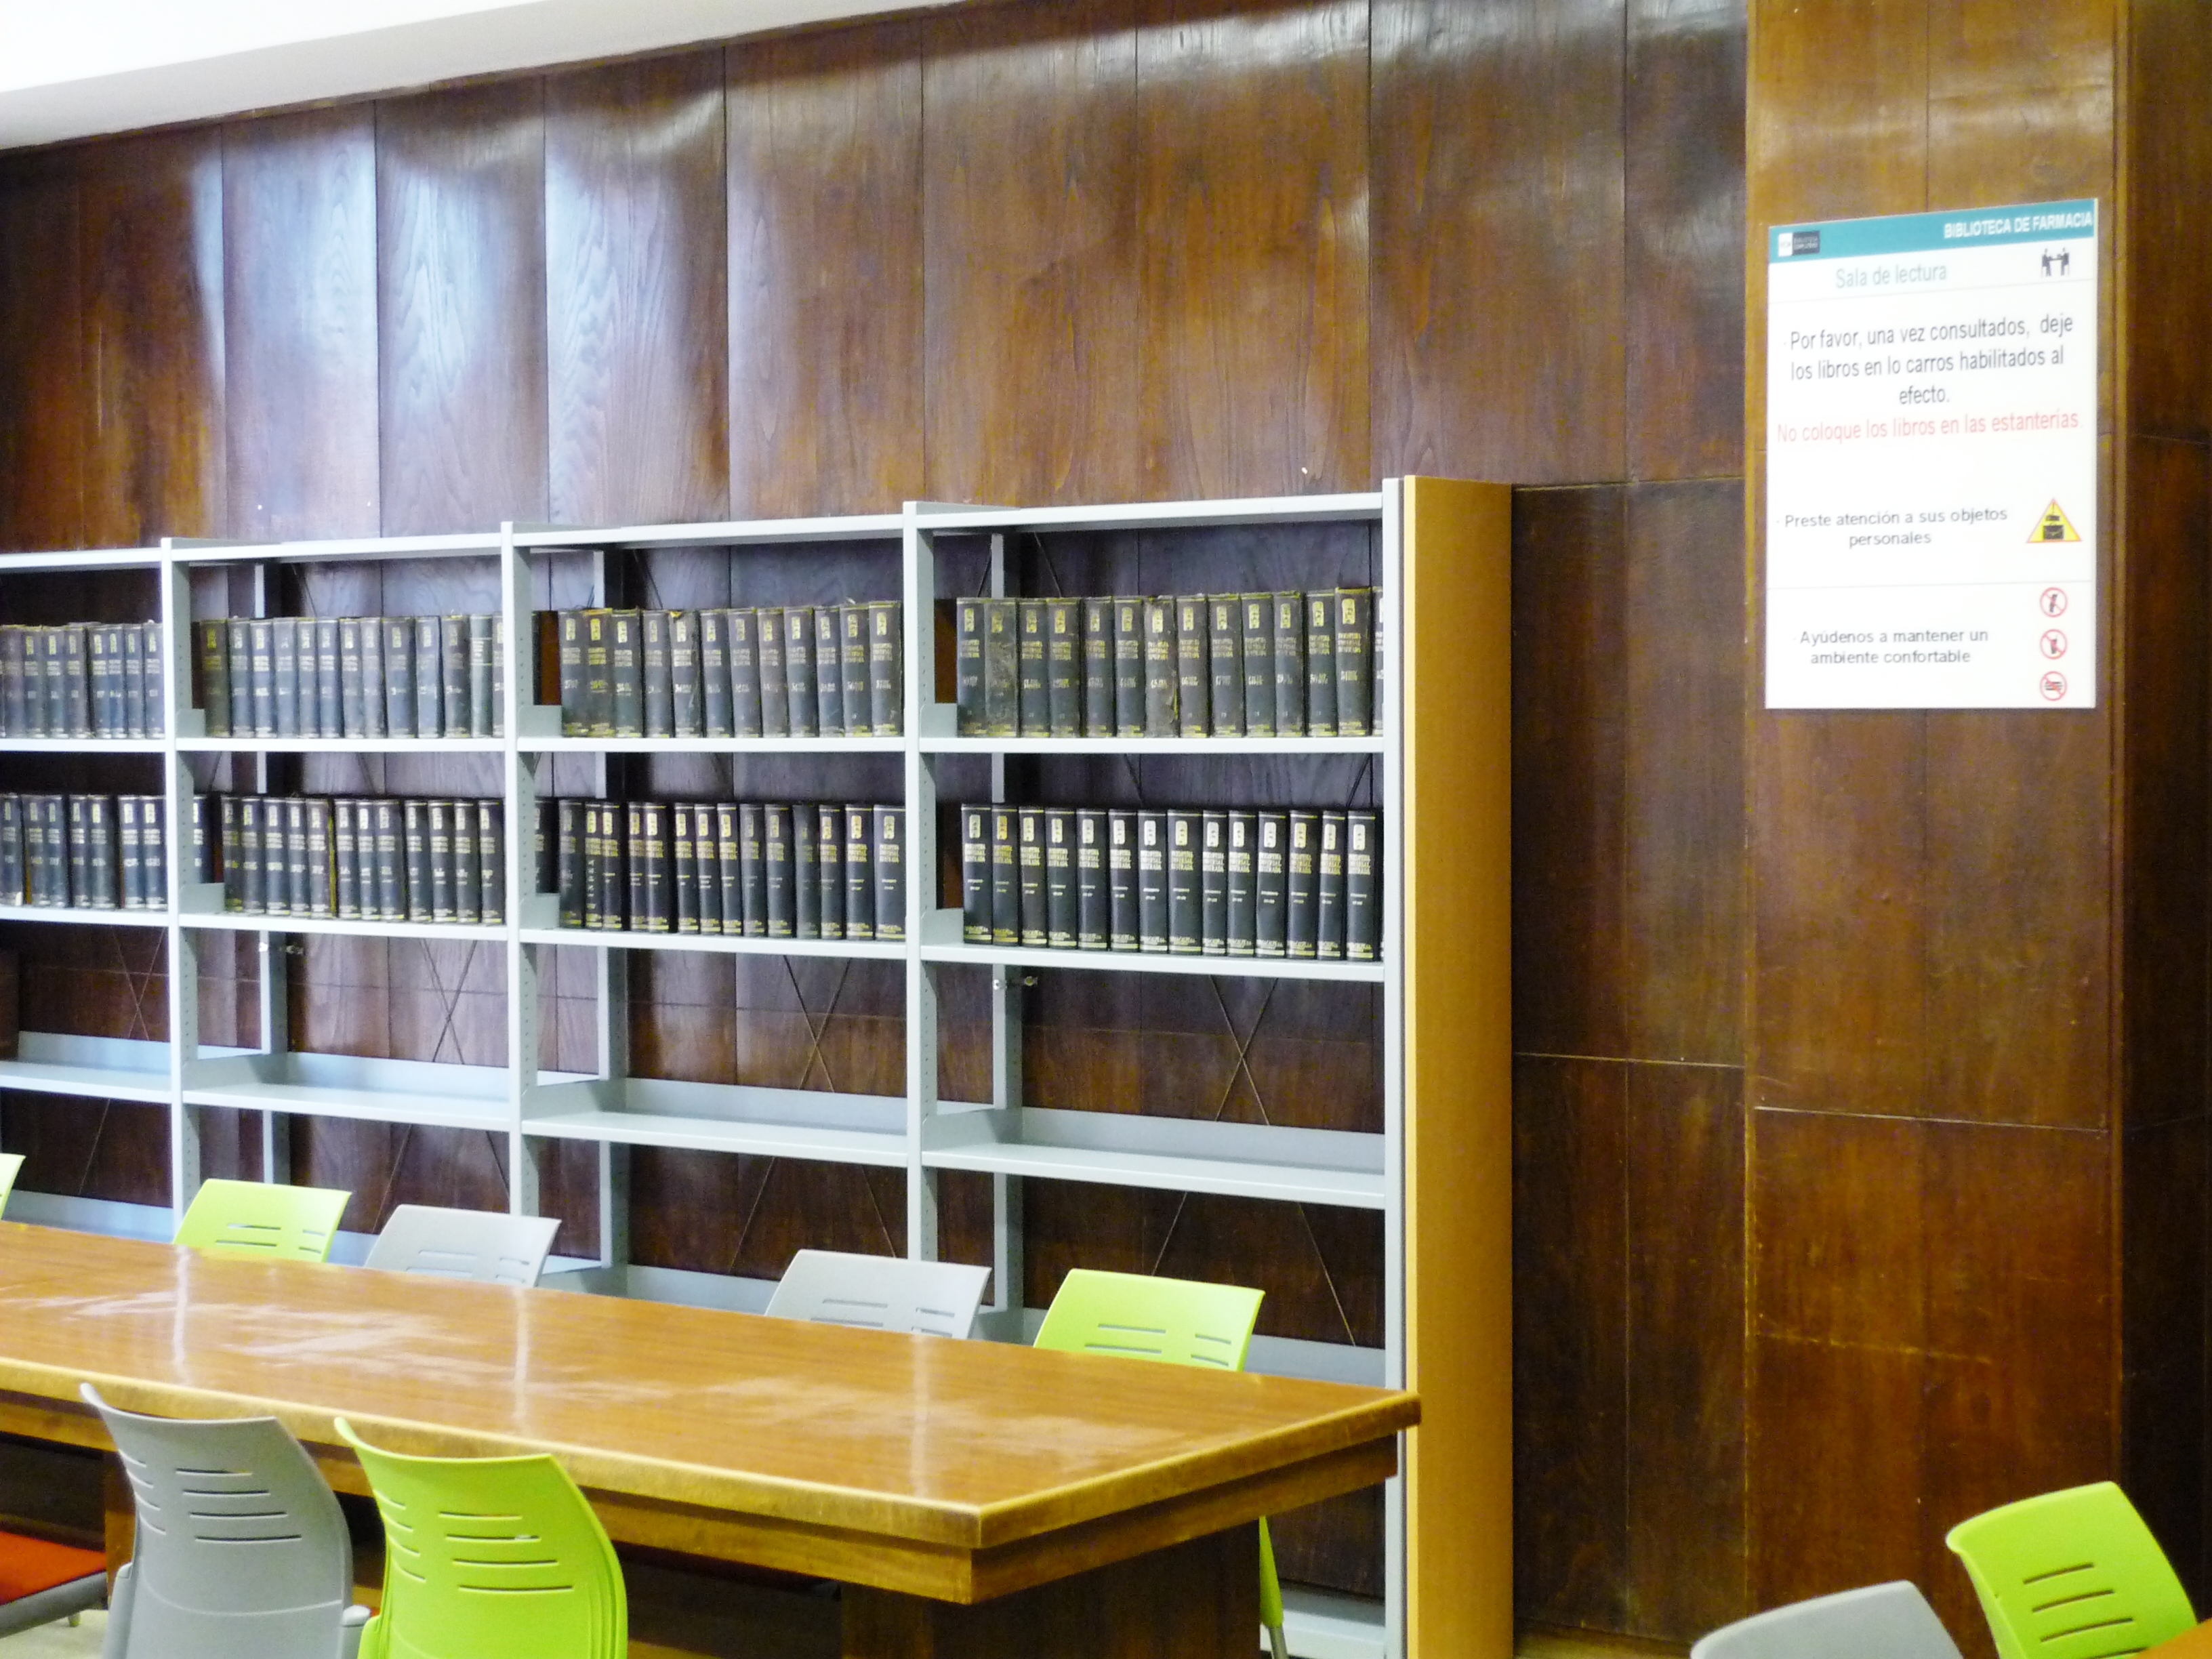 Biblioteca de Farmacia. Colección de Referencia después de la remodelación de Agosto de 2012